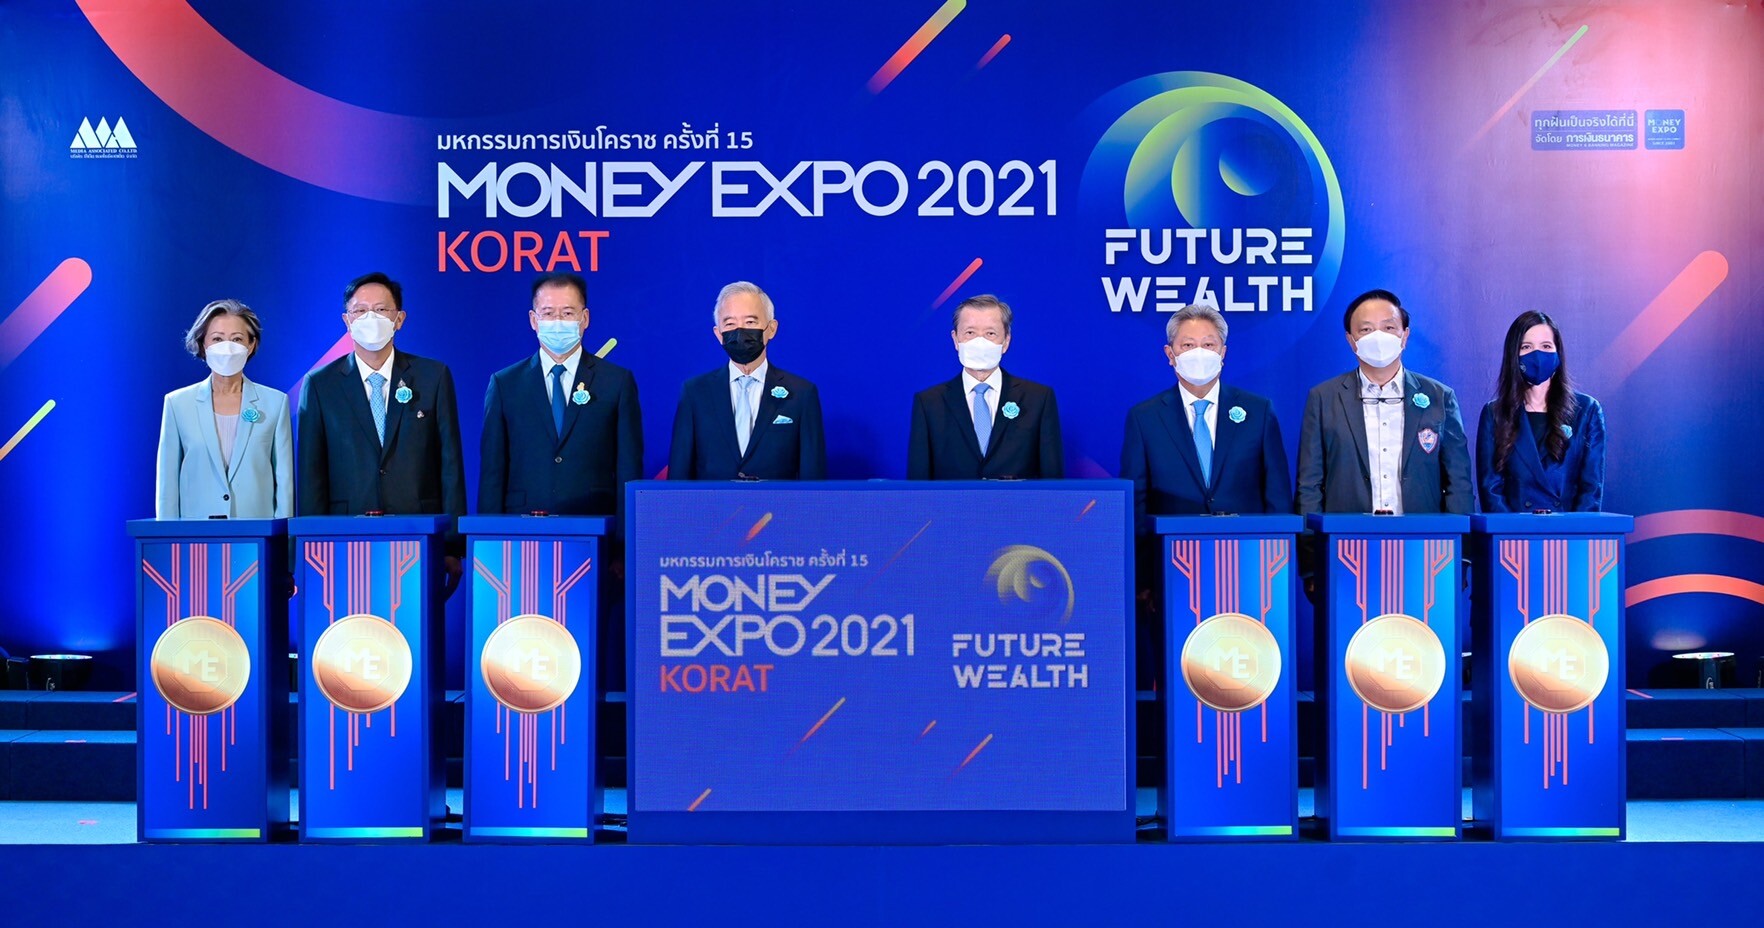 เปิดยิ่งใหญ่ Money Expo Korat 2021 อัดแคมเปญแรง ส่งตรงถึงลูกค้าภาคอีสาน